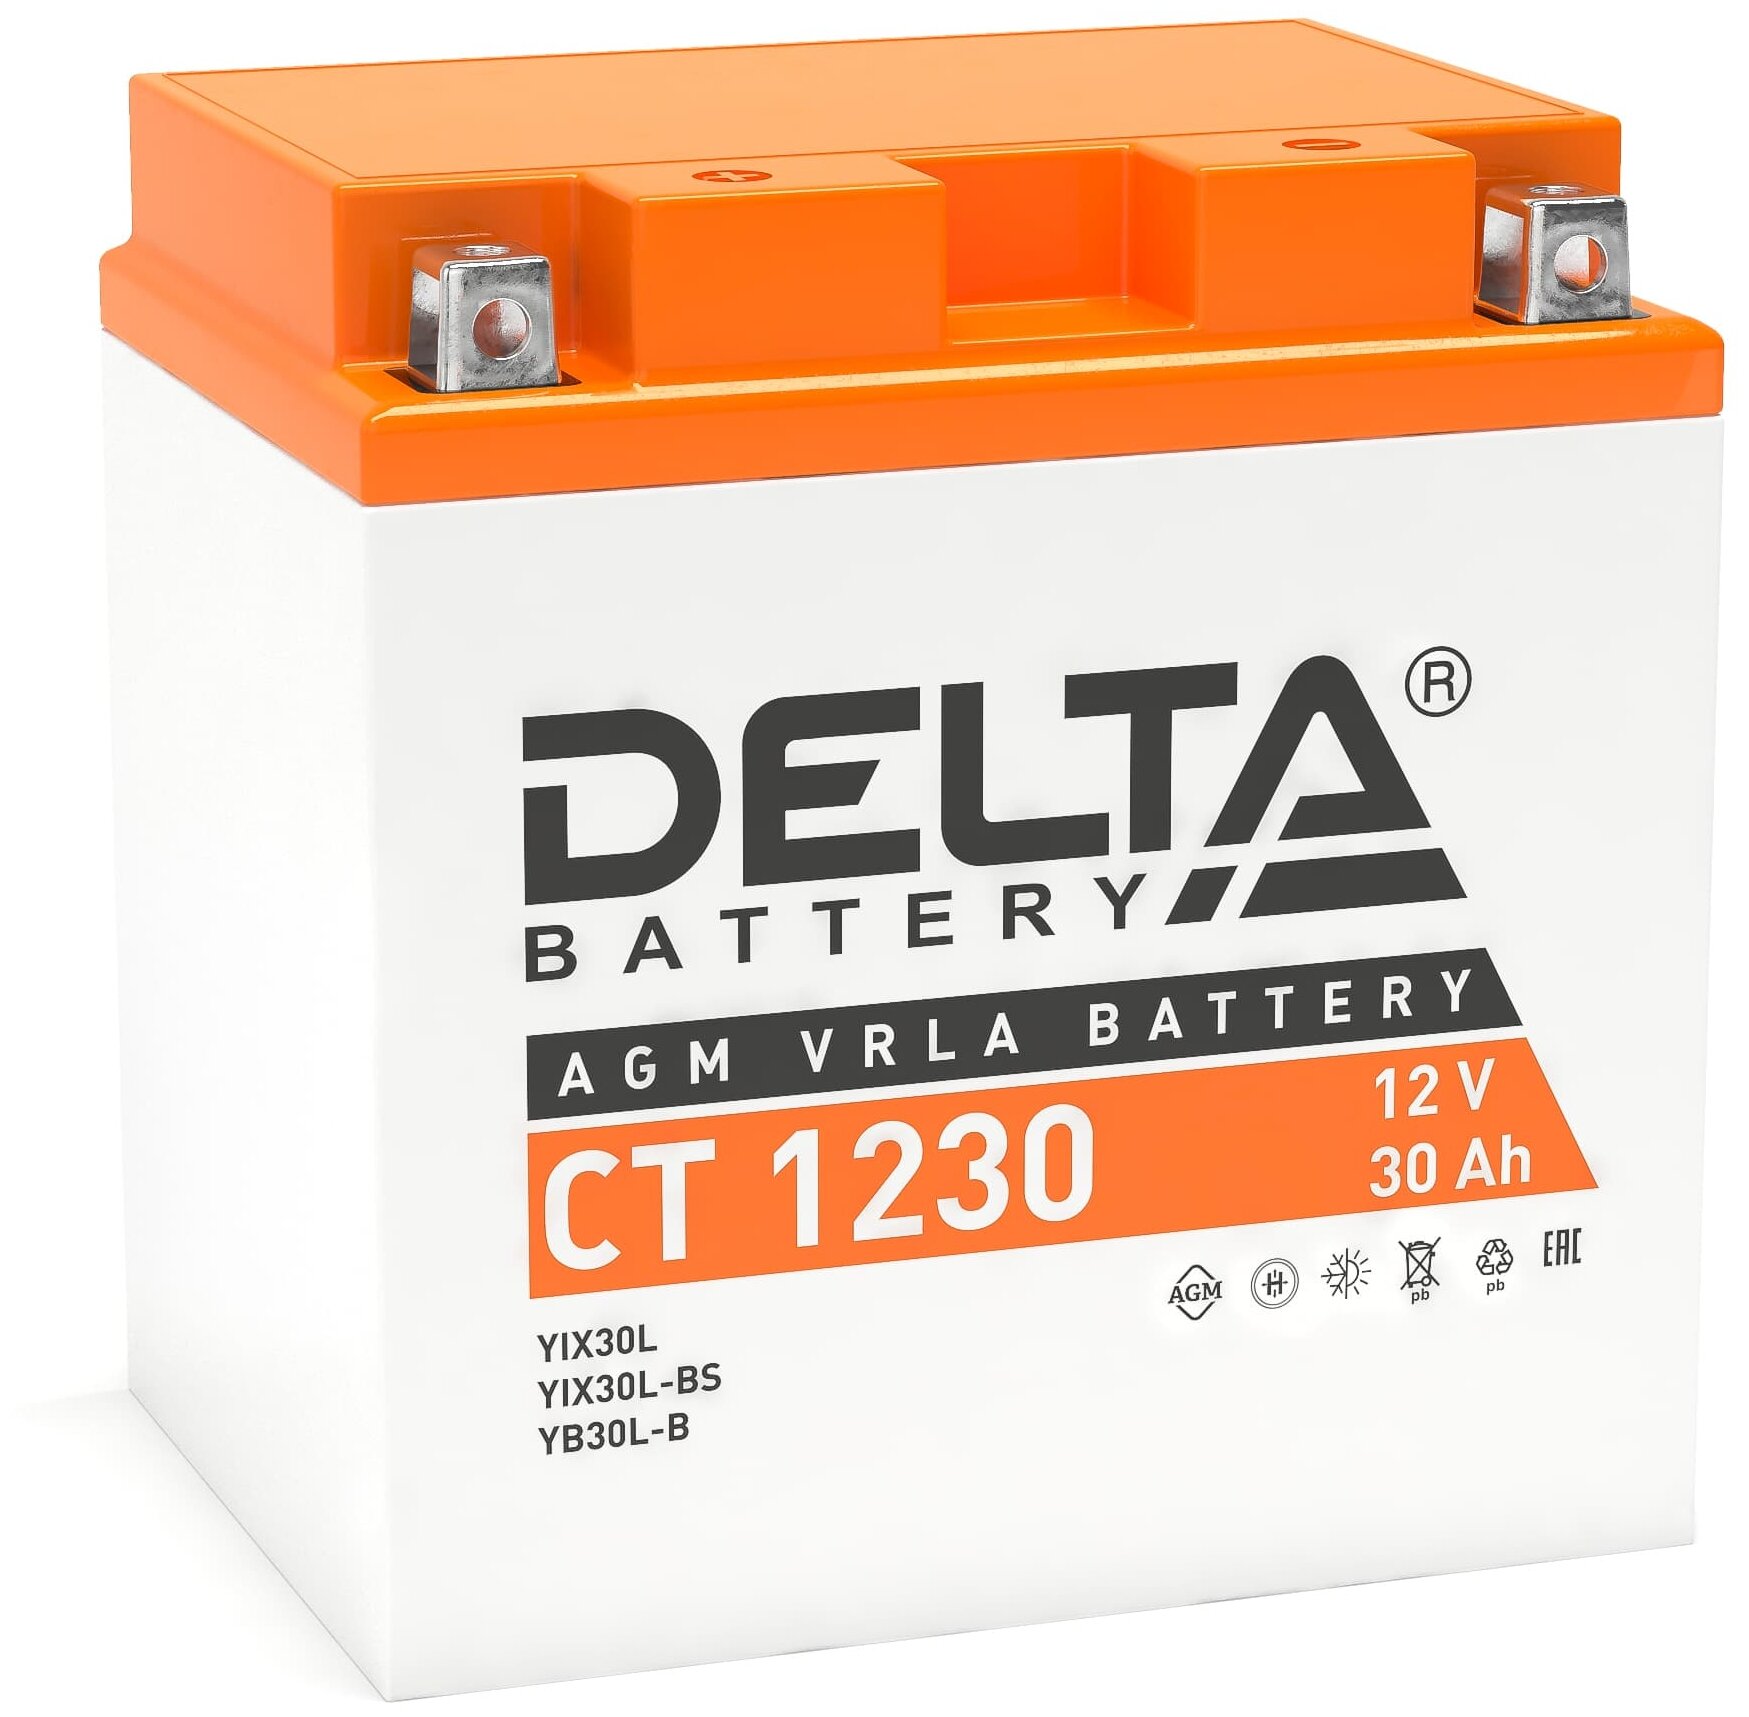  Delta 12 30 (Ytx30l, Yx30l-Bs, Yb30l-B) / ** 16,8*12,6*17,5  . Ct 1230 Delta . CT1230